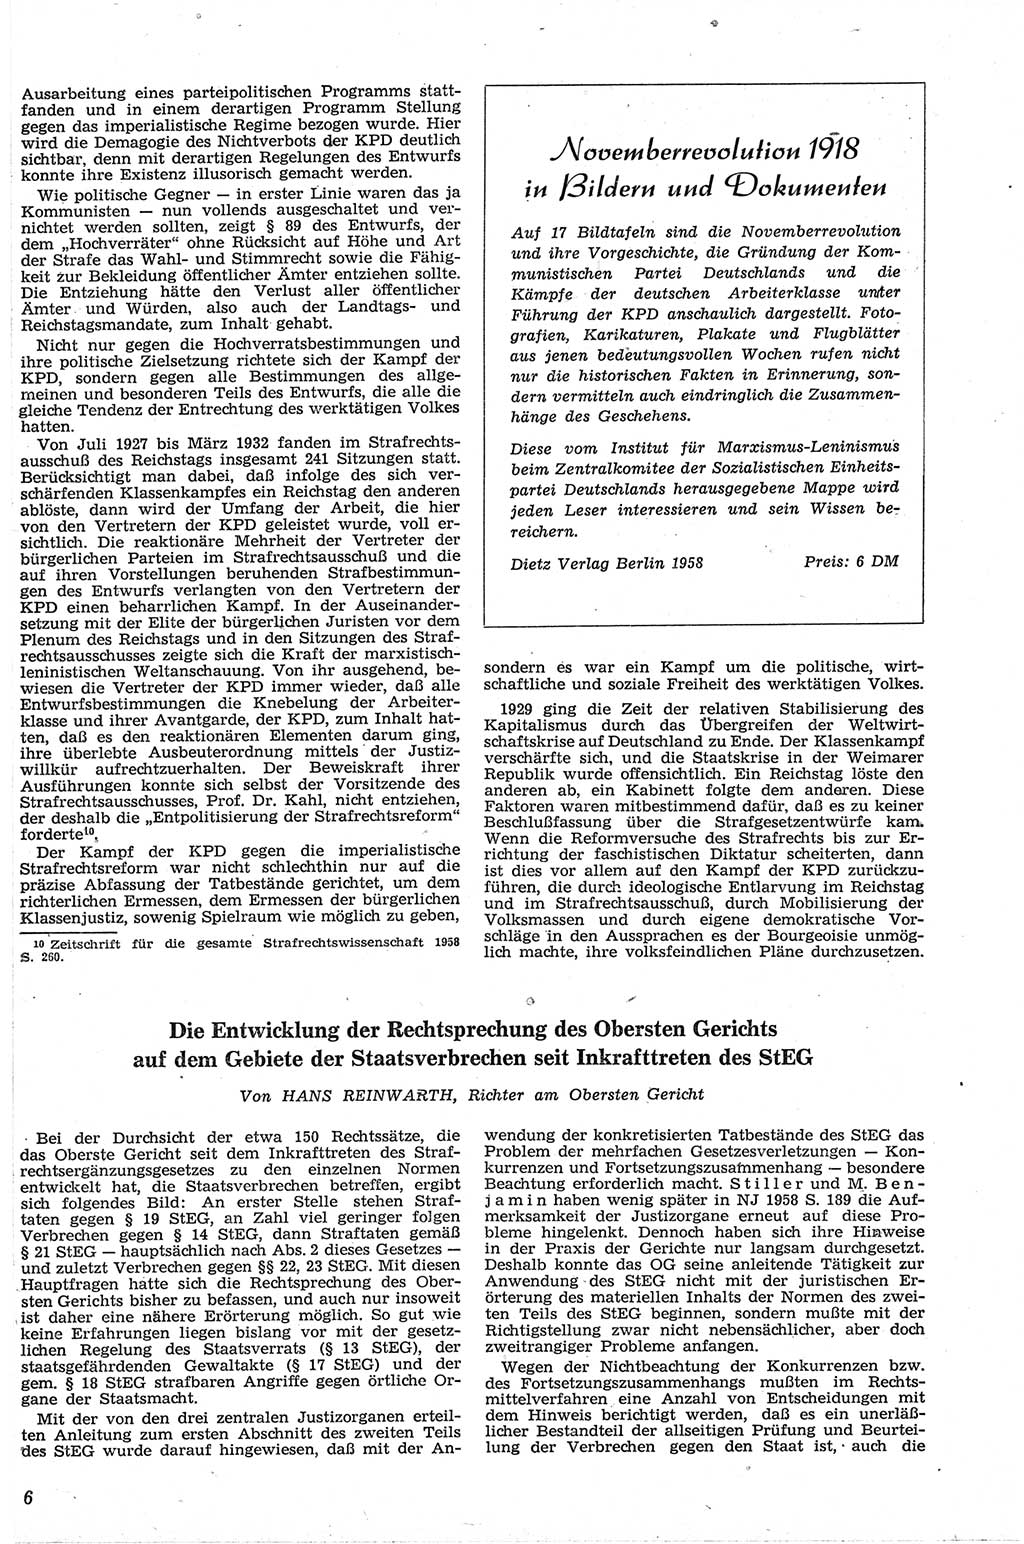 Neue Justiz (NJ), Zeitschrift für Recht und Rechtswissenschaft [Deutsche Demokratische Republik (DDR)], 13. Jahrgang 1959, Seite 6 (NJ DDR 1959, S. 6)